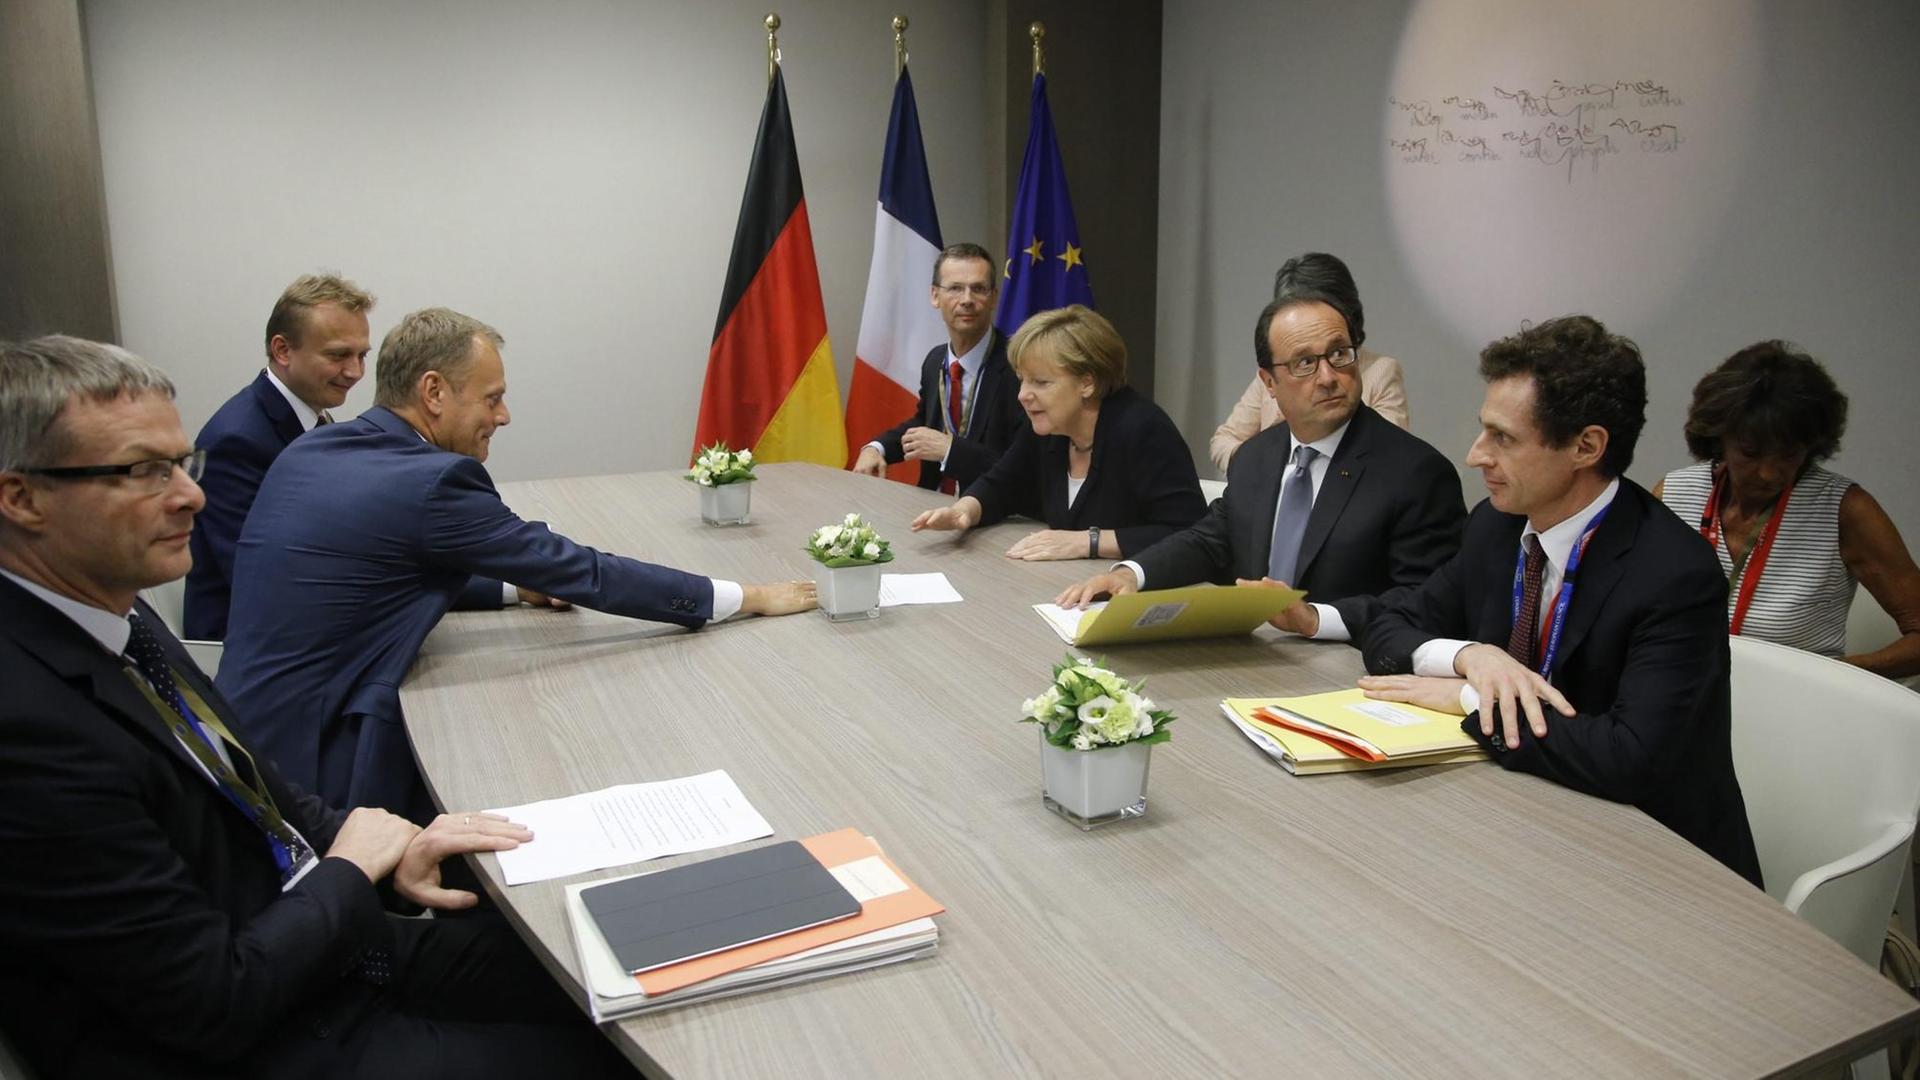 Die EU-Staats- und Regierungschefs - darunter Kanzlerin Merkel und Frankeichs Präsident Hollande - beraten auf ihrem Sondergipfel in Brüssel.